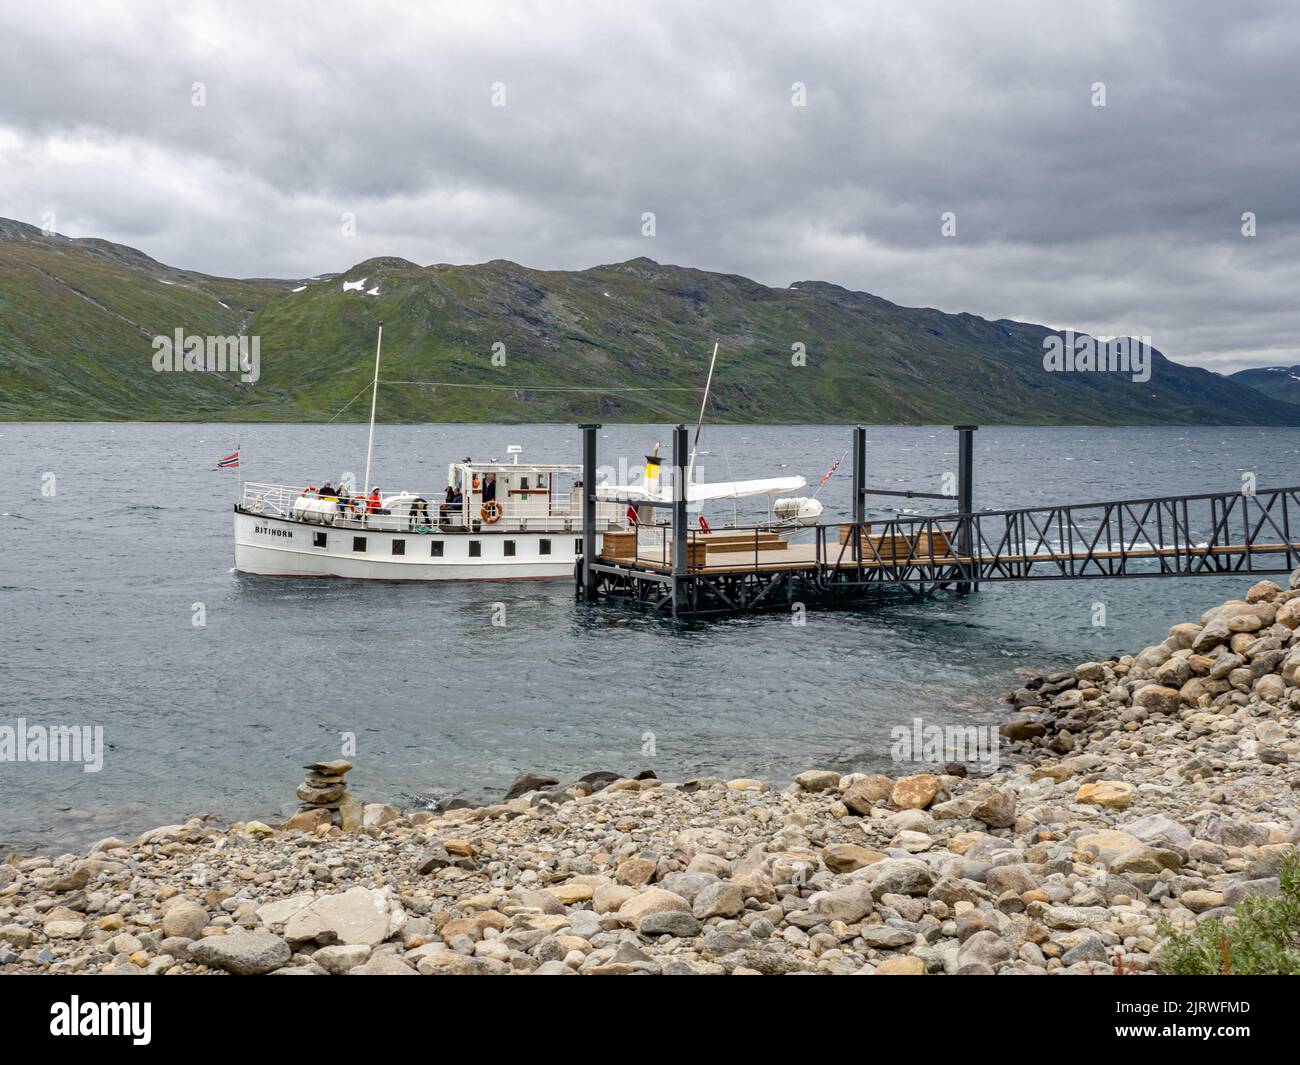 Le bateau-ferry Bitihorn collectant les passagers de la jetée de Torfinsbu sur le lac Bygdin dans le parc national de Jotunheimen en Norvège Banque D'Images